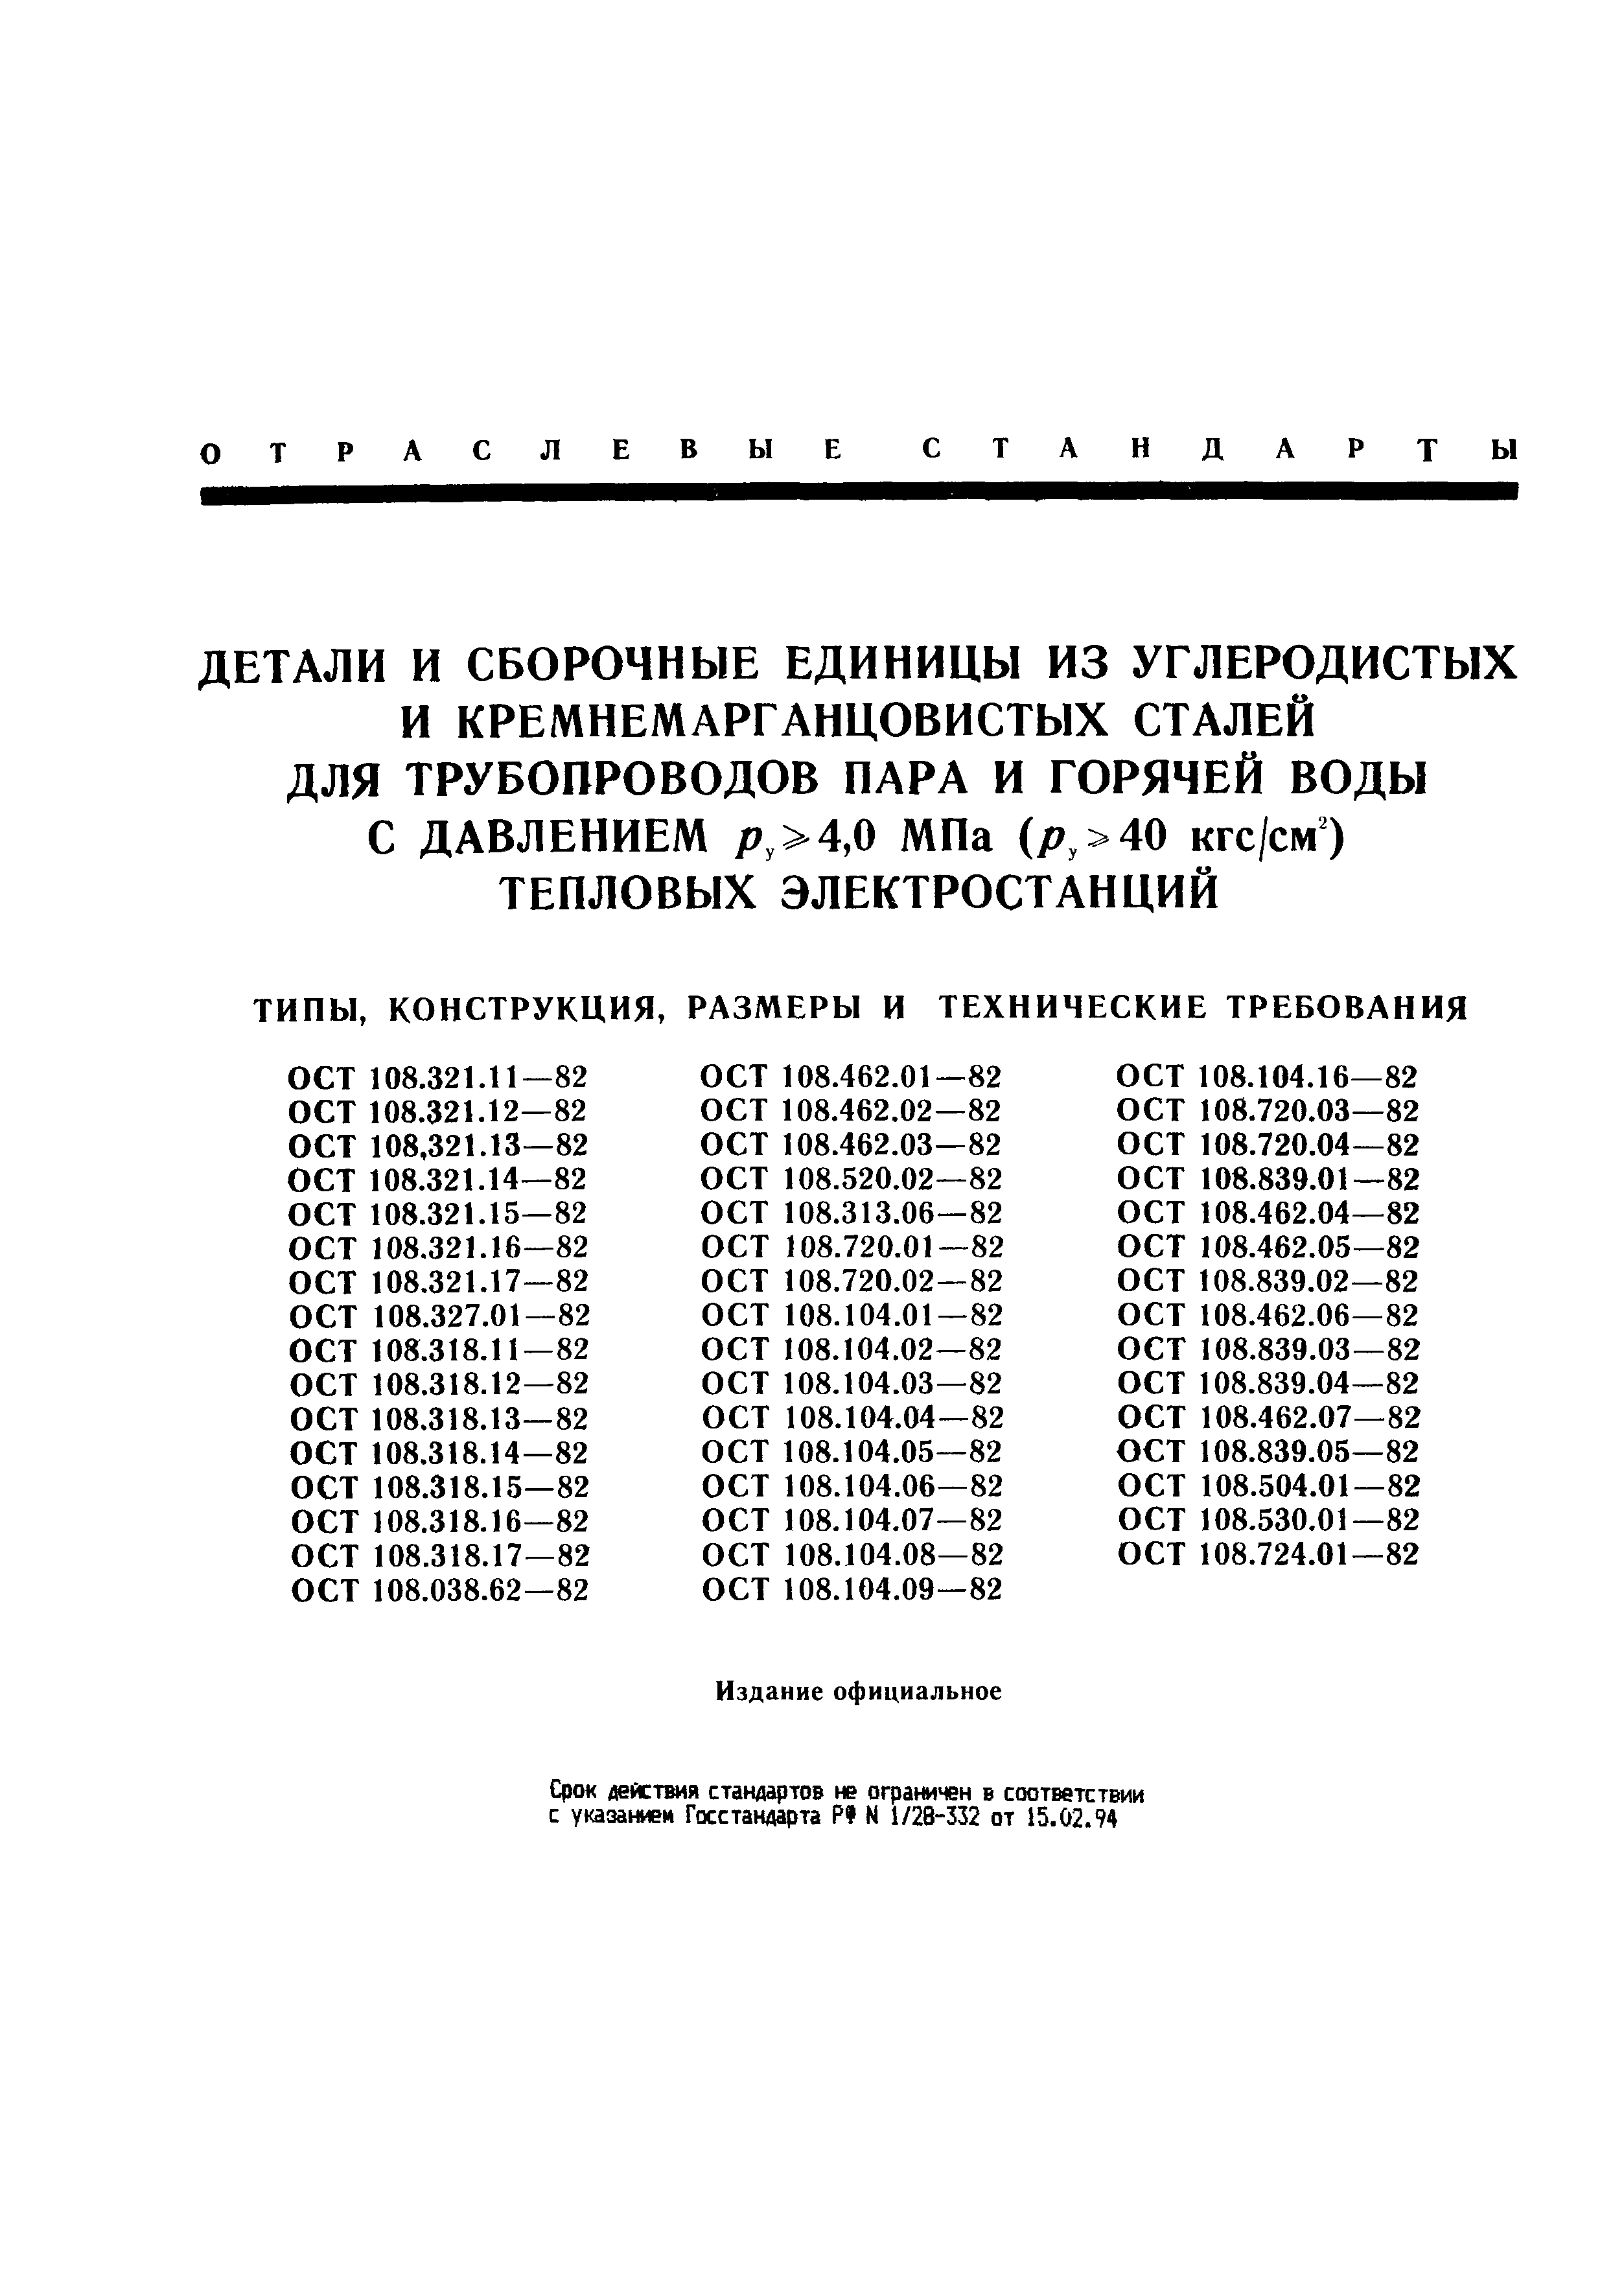 ОСТ 108.318.11-82